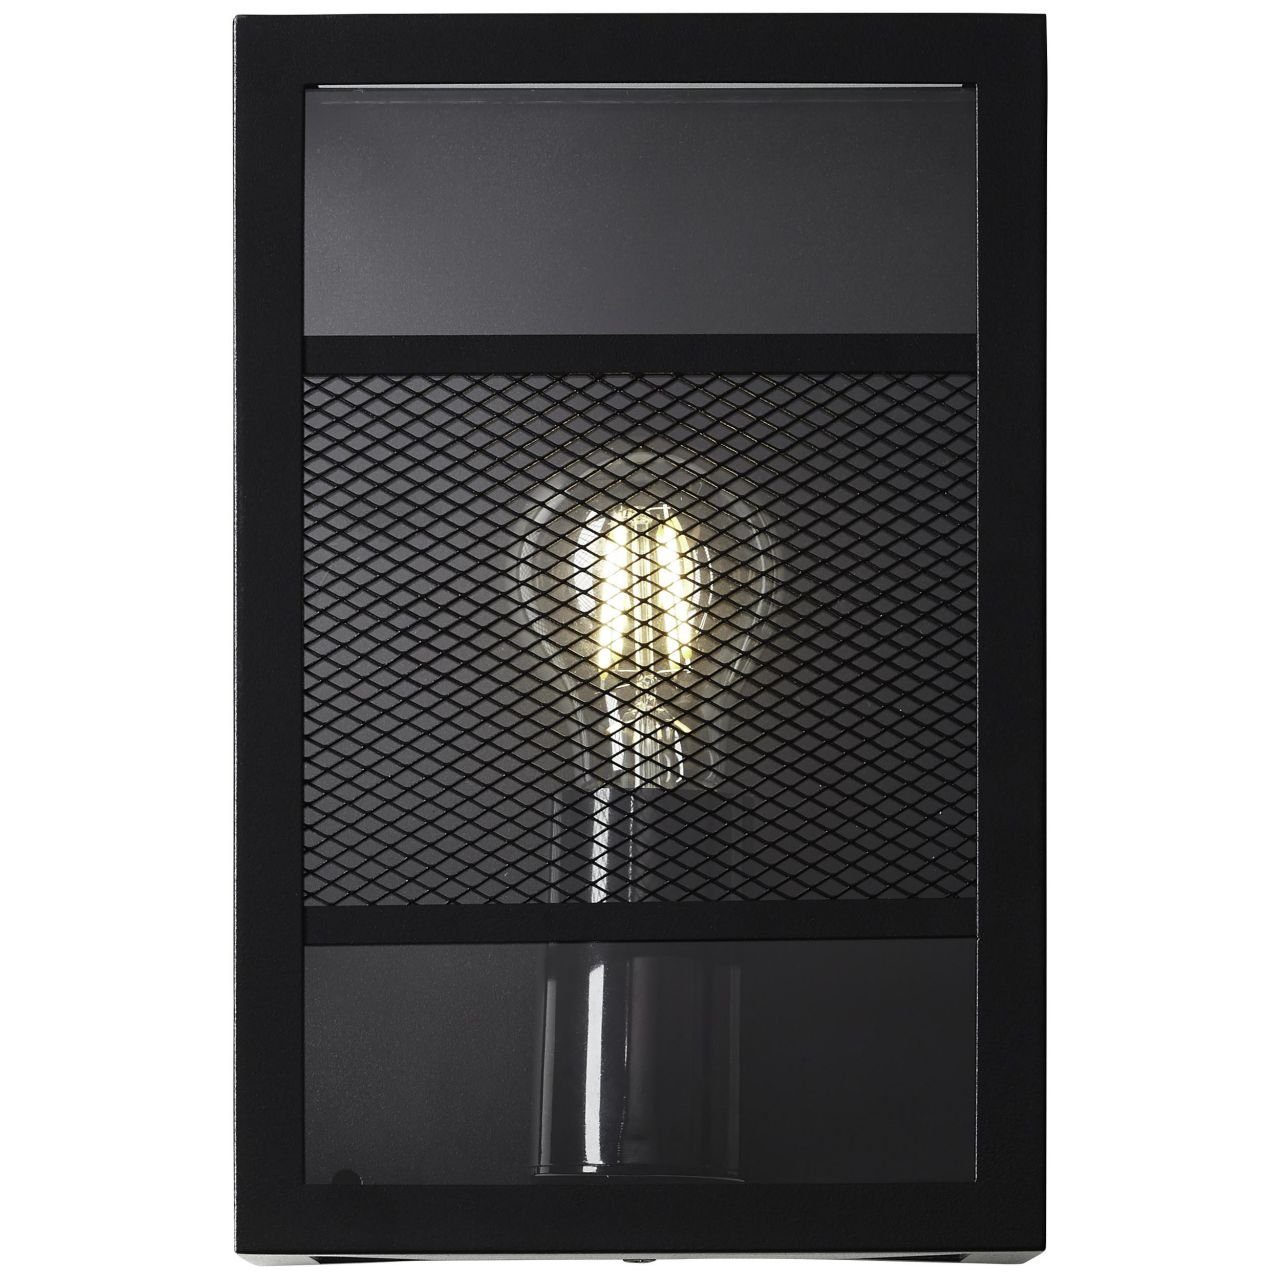 Brilliant LED Außen-Wandleuchte Getta Außenwandleuchte A60, Getta, Lampe, schwarz, Metall/Kunststoff, E27 1x